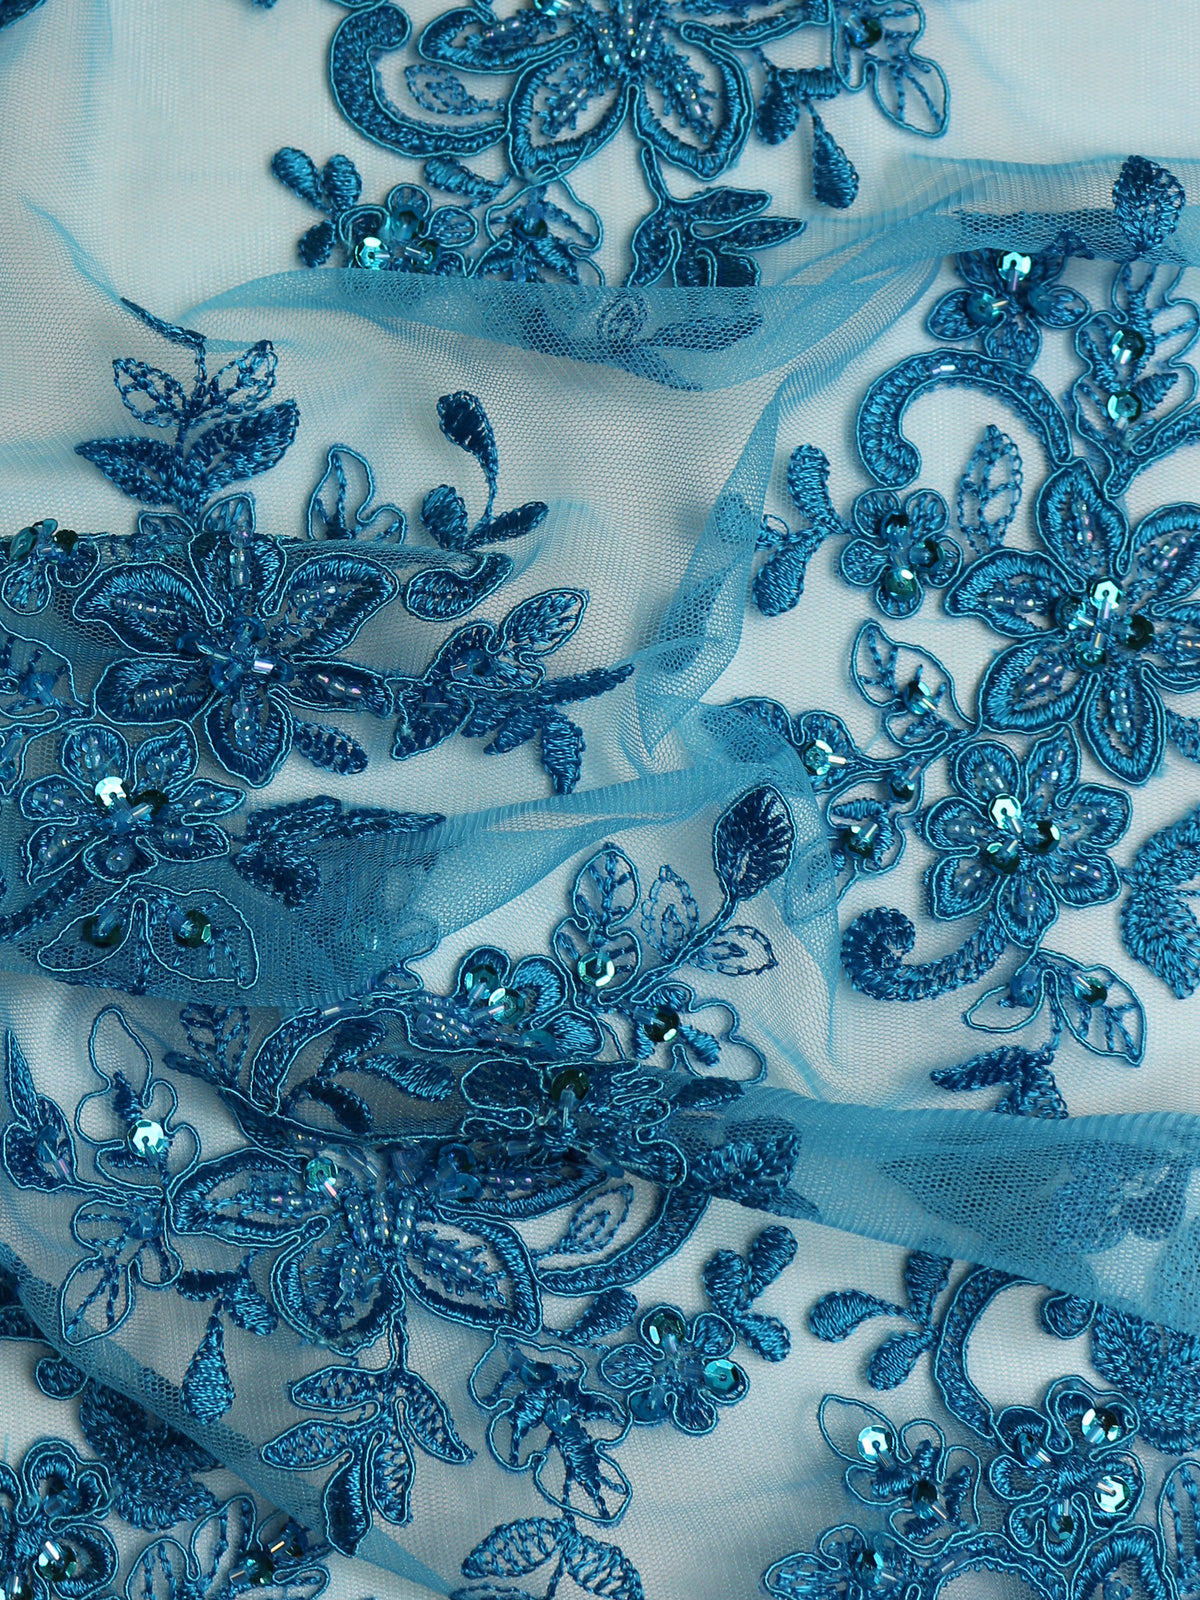 Turquoise Beaded Lace - Kady